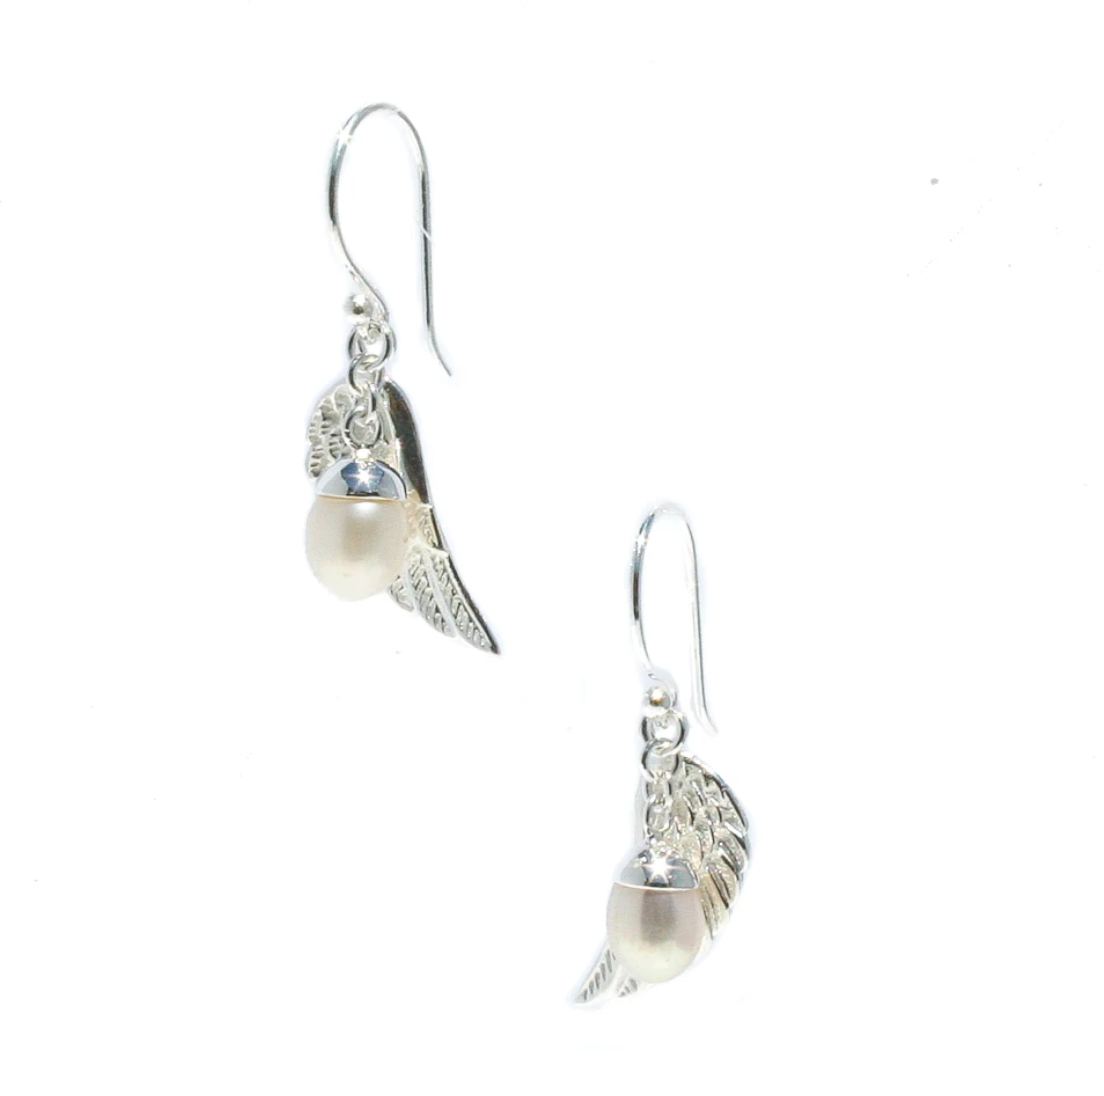 angel wing earrings